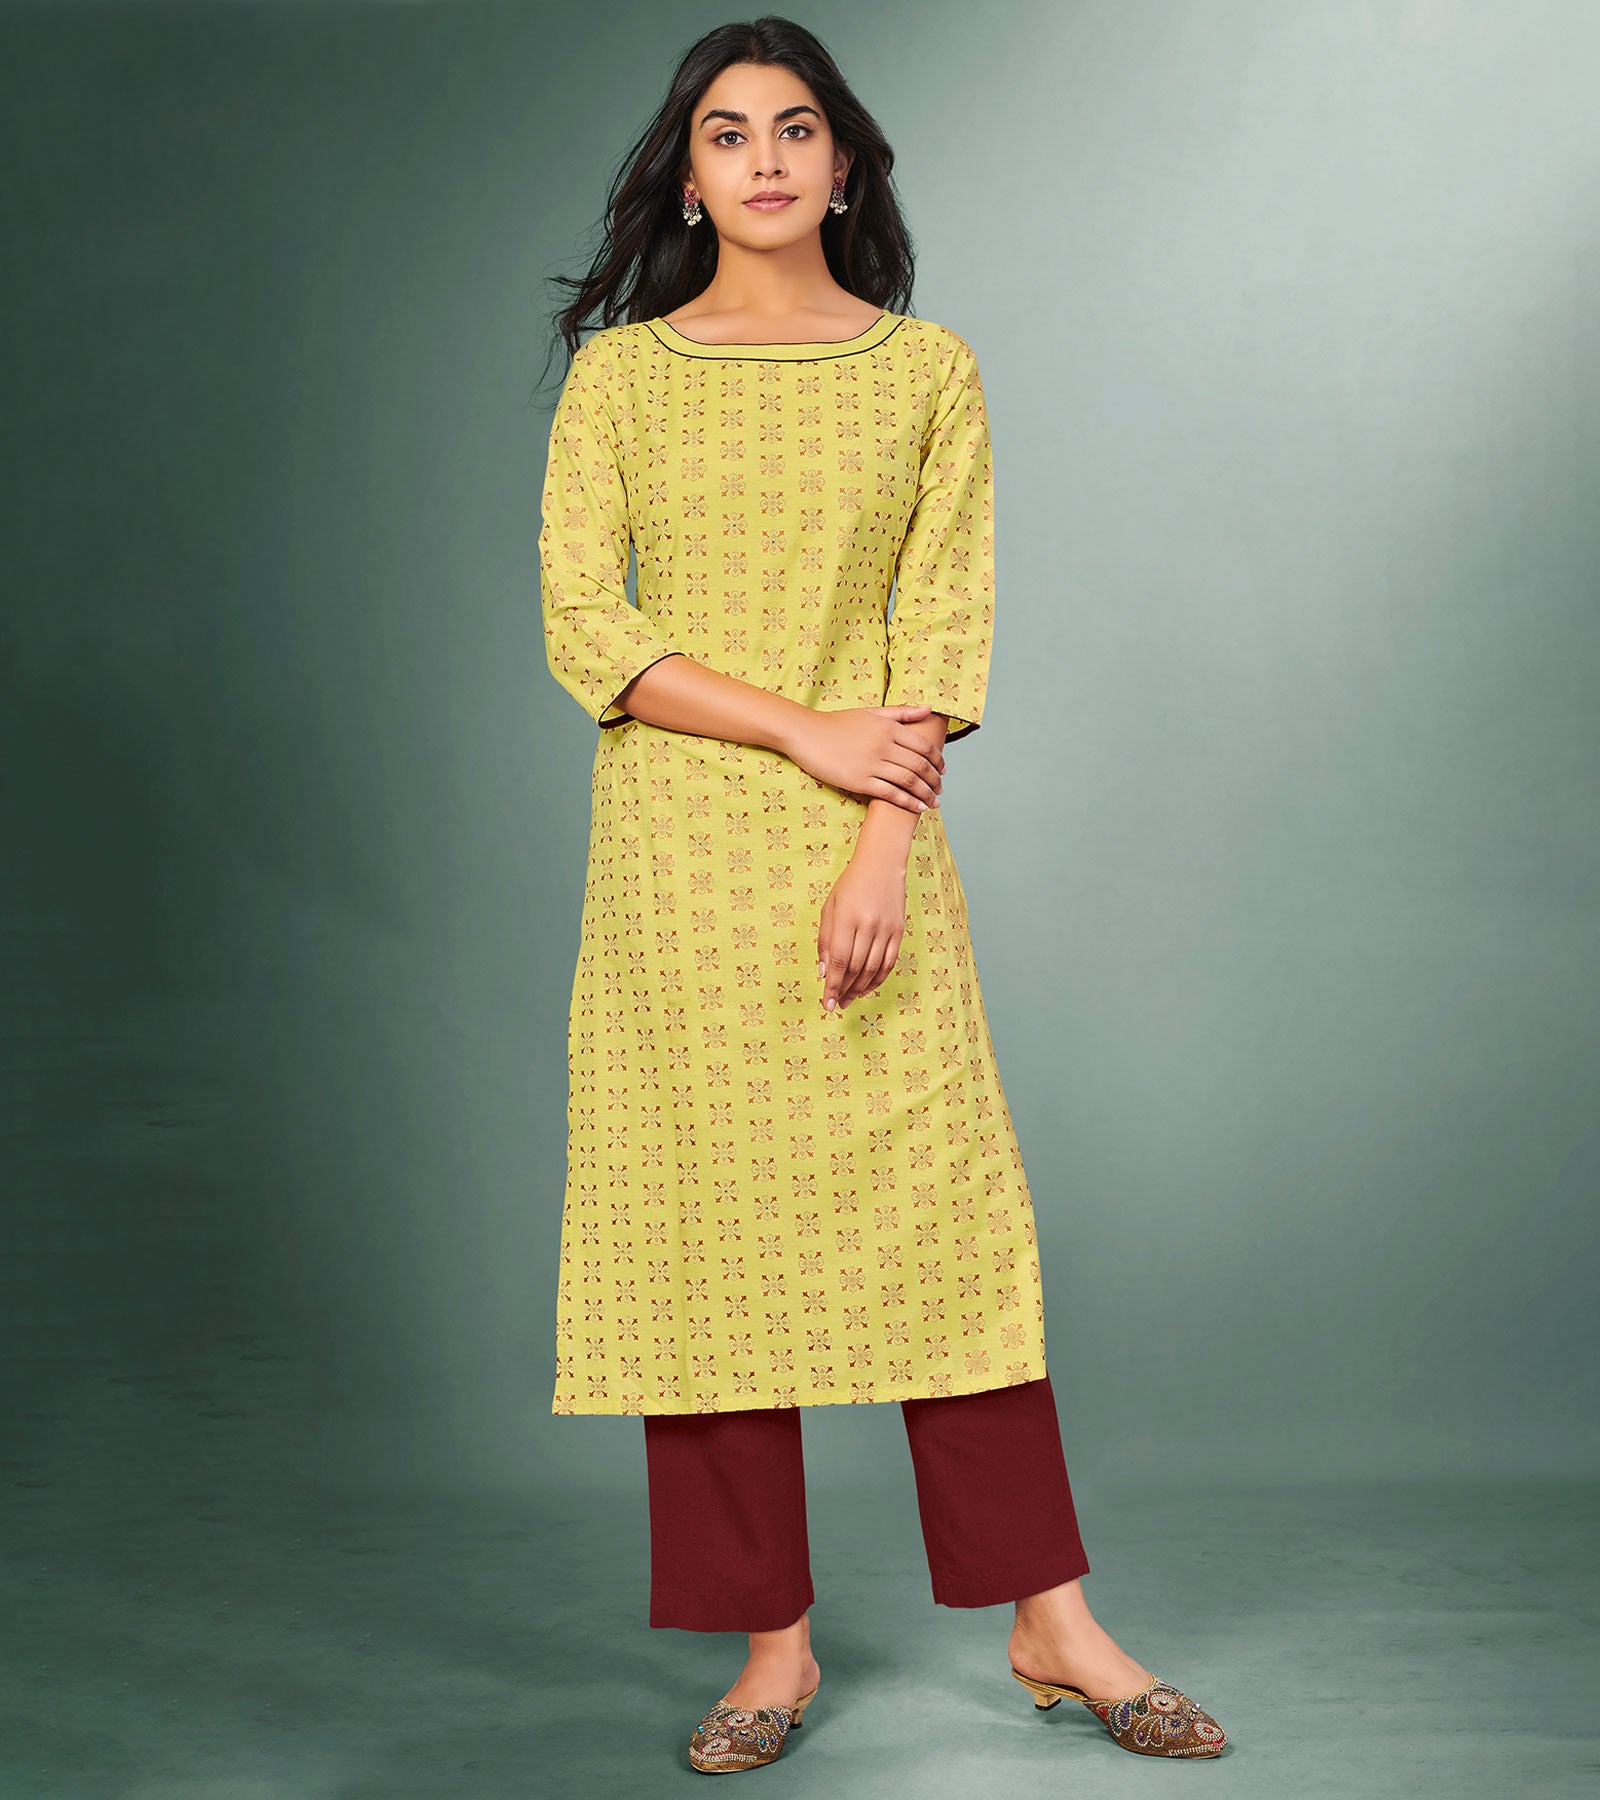 Ladies Lemon Yellow Straight Cotton Kurti Manufacturer in Jaipur, Rajasthan  - Latest Price